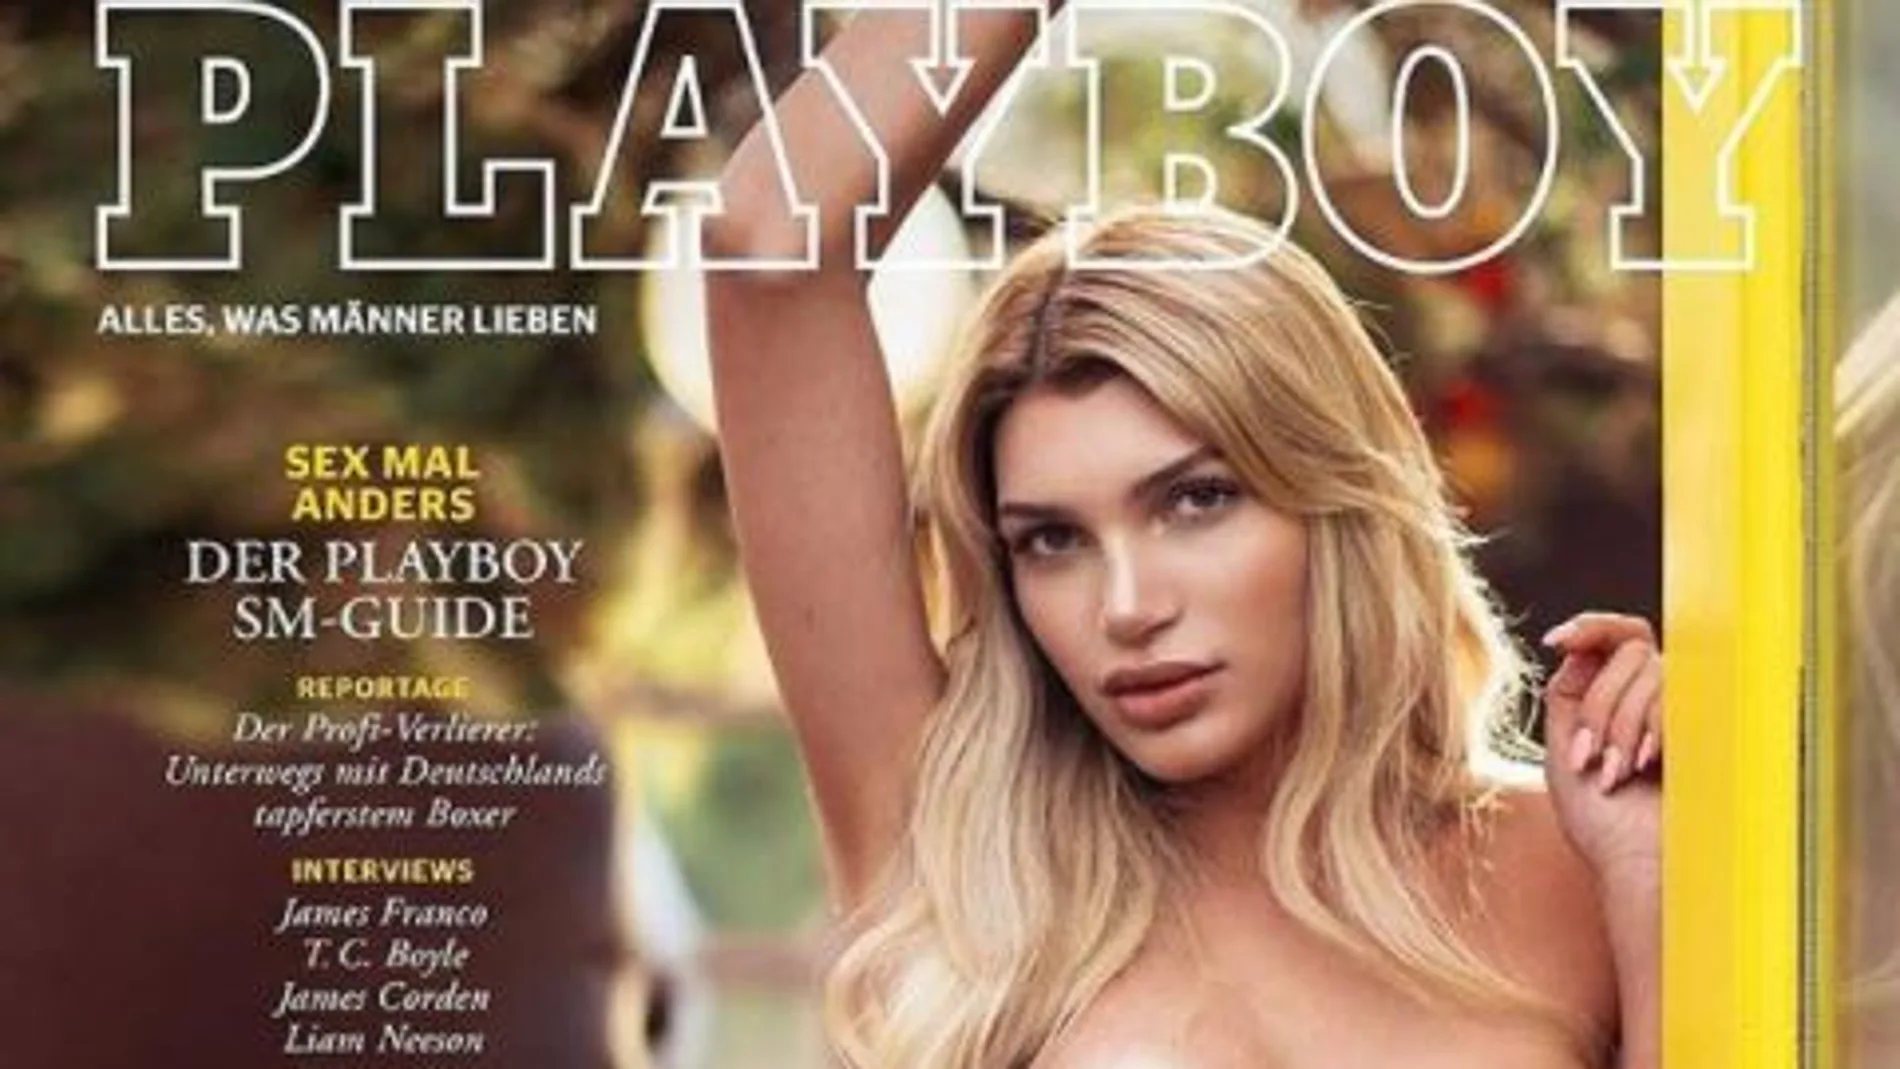 Una transexual, protagonista por primera vez de la portada de Playboy